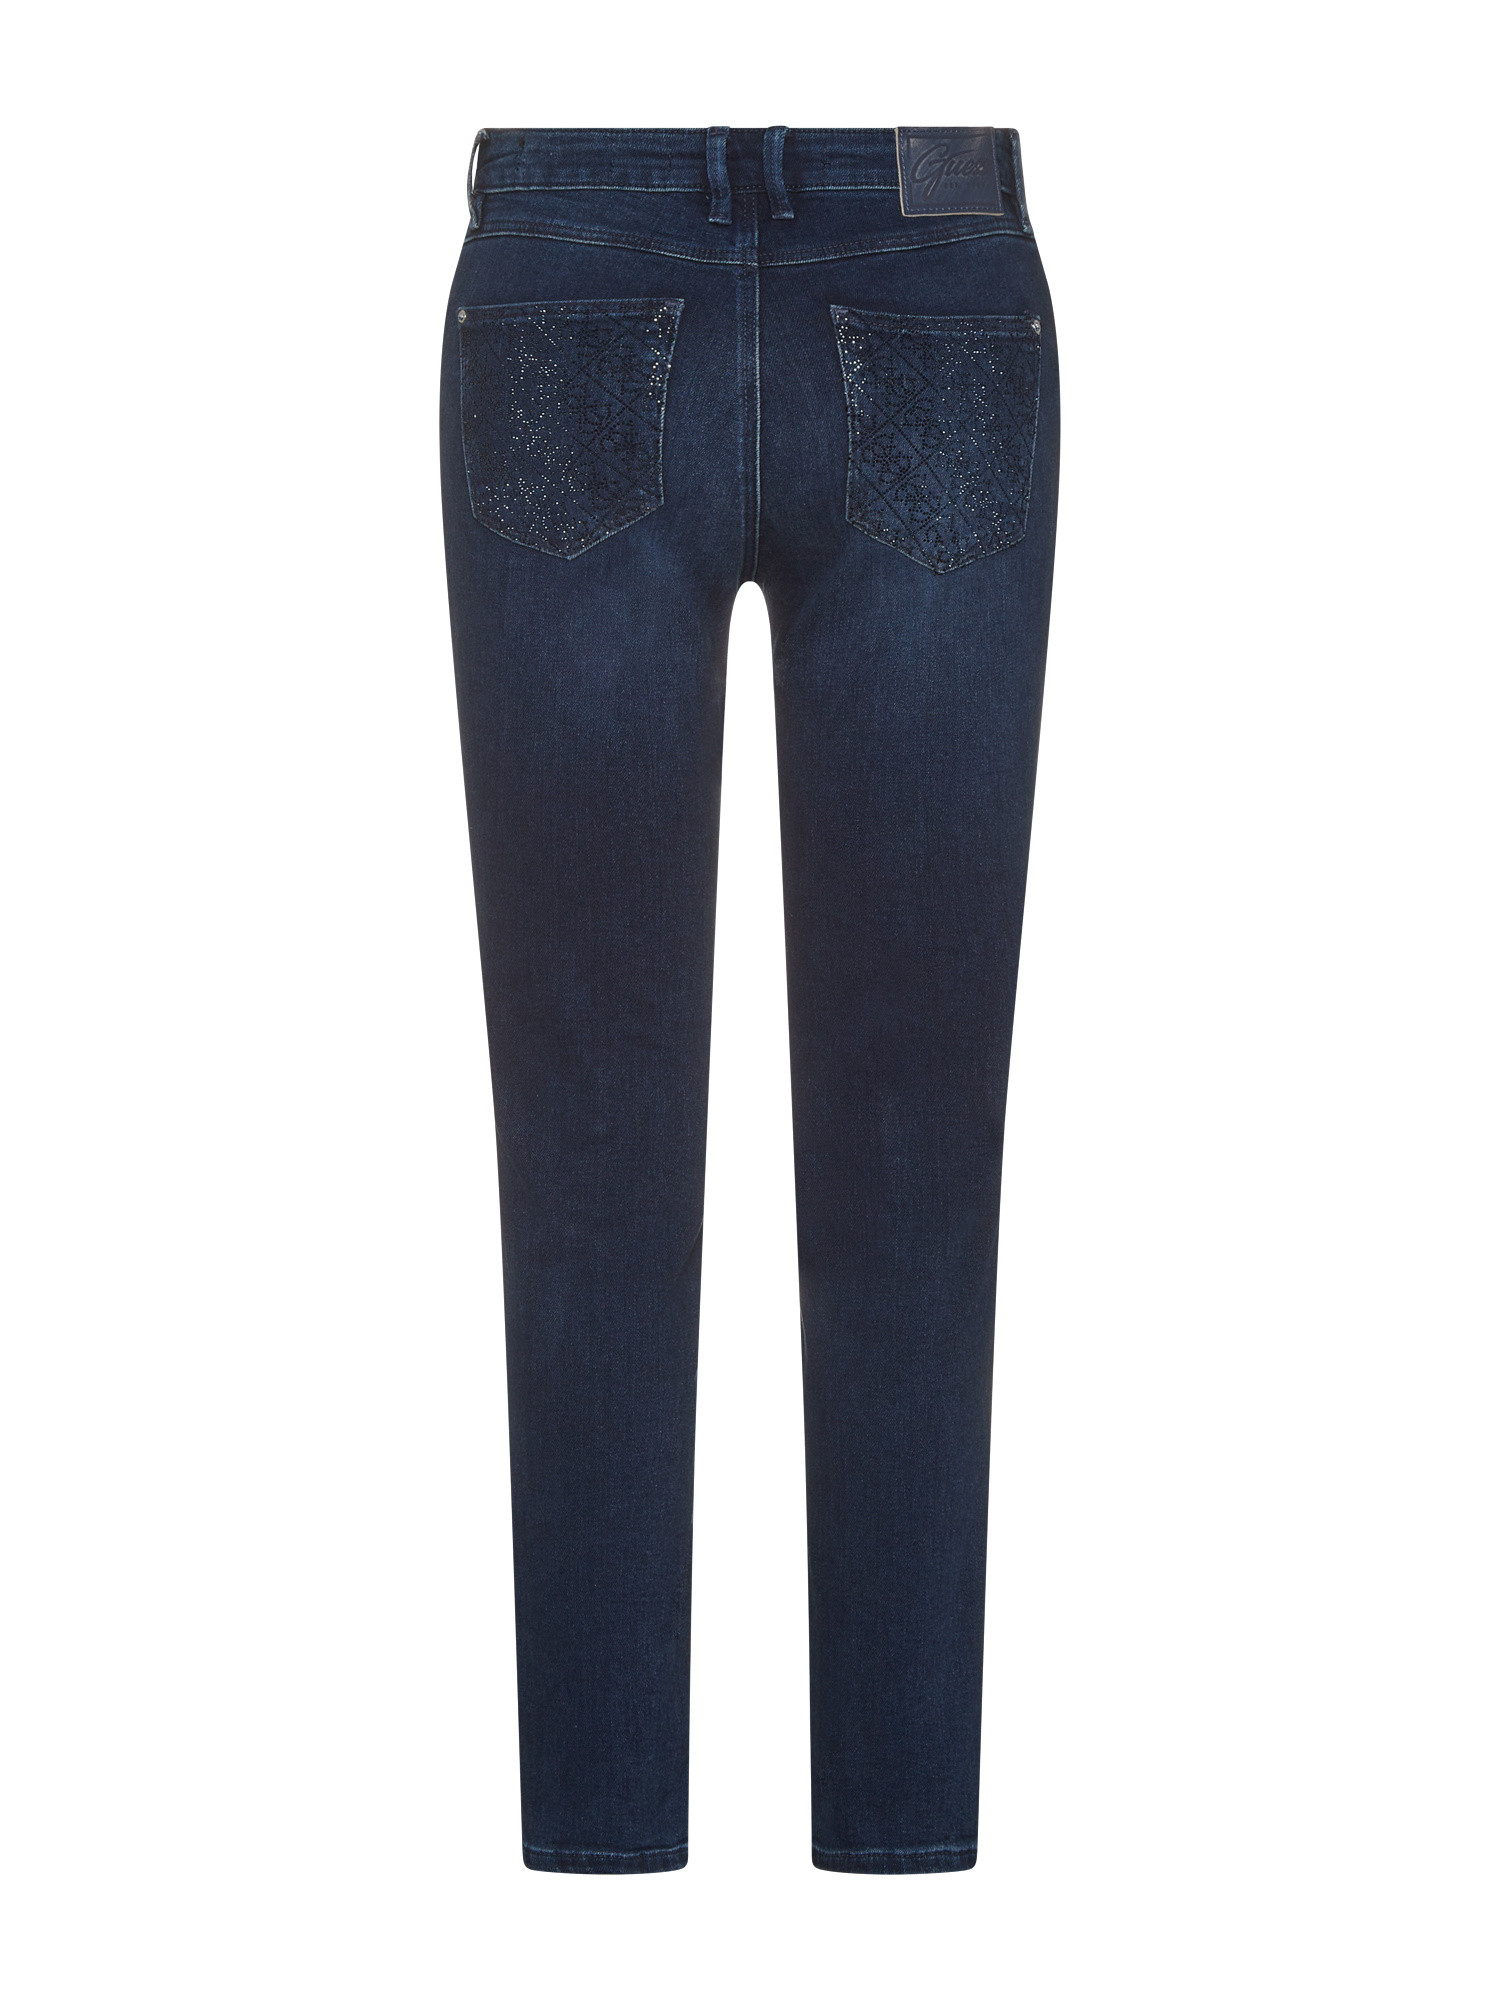 Guess - Five pocket skinny jeans, Dark Blue, large image number 1